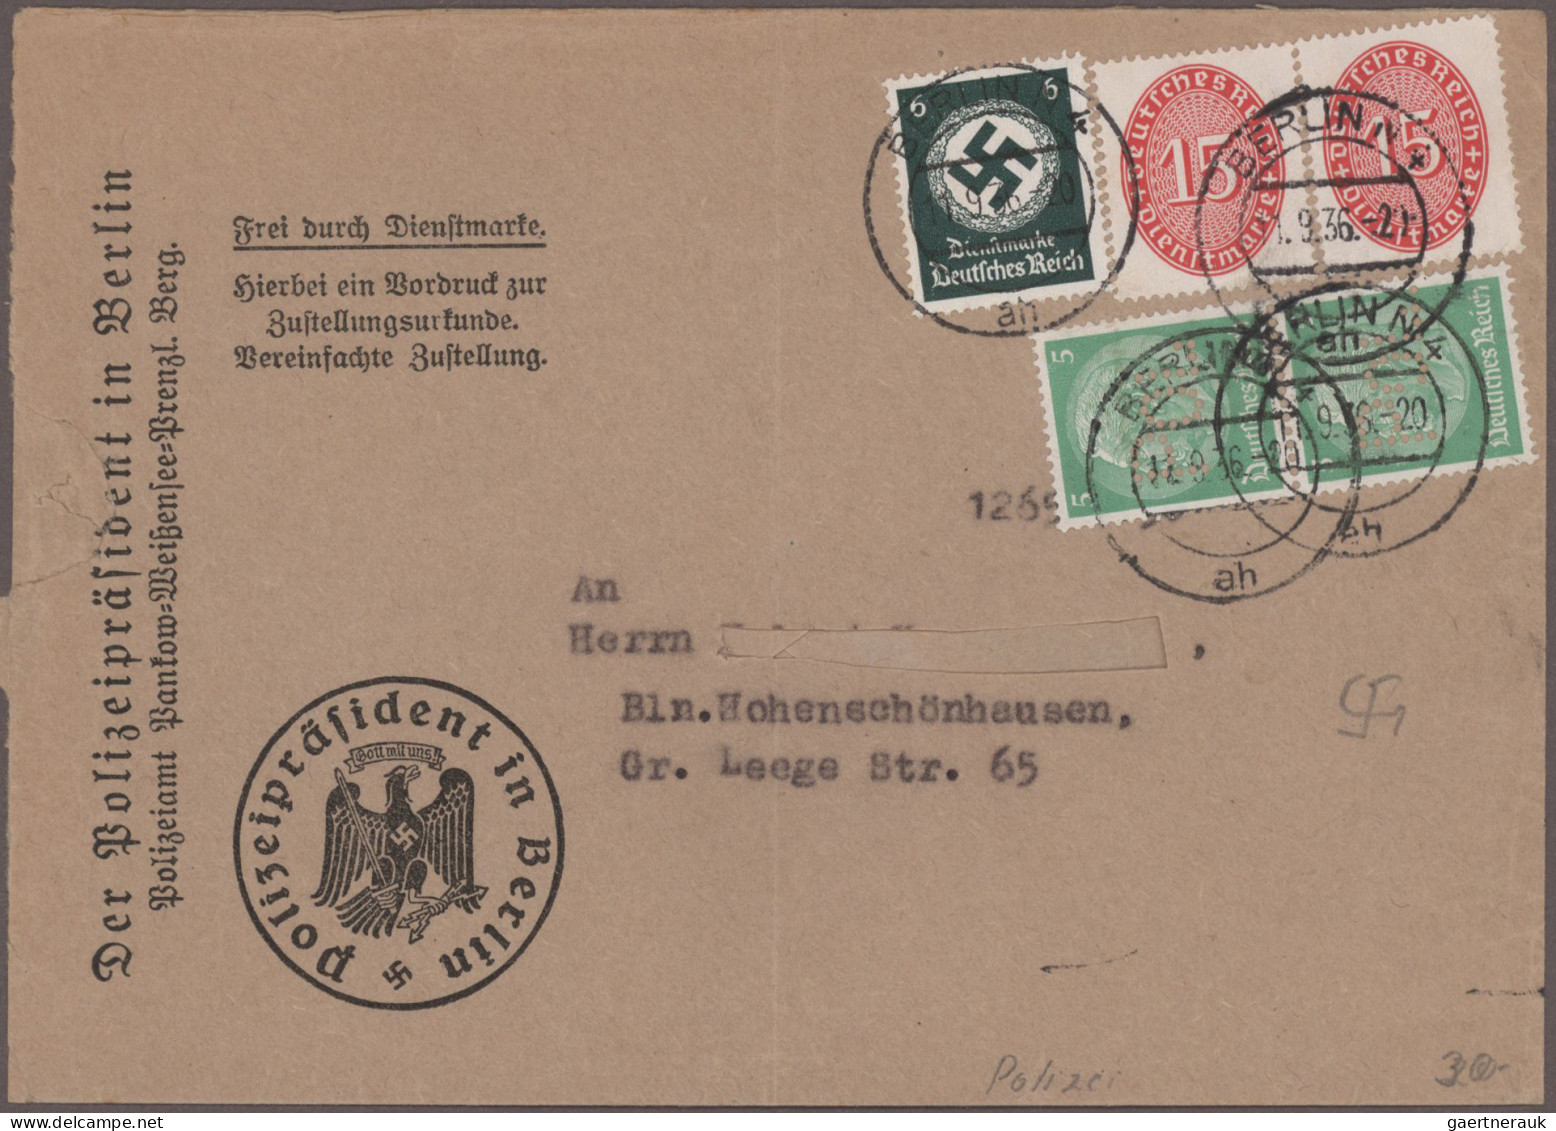 Deutsches Reich - POL-Lochungen: 1927/1938 (ca.), umfangreiche Sammlung von lose